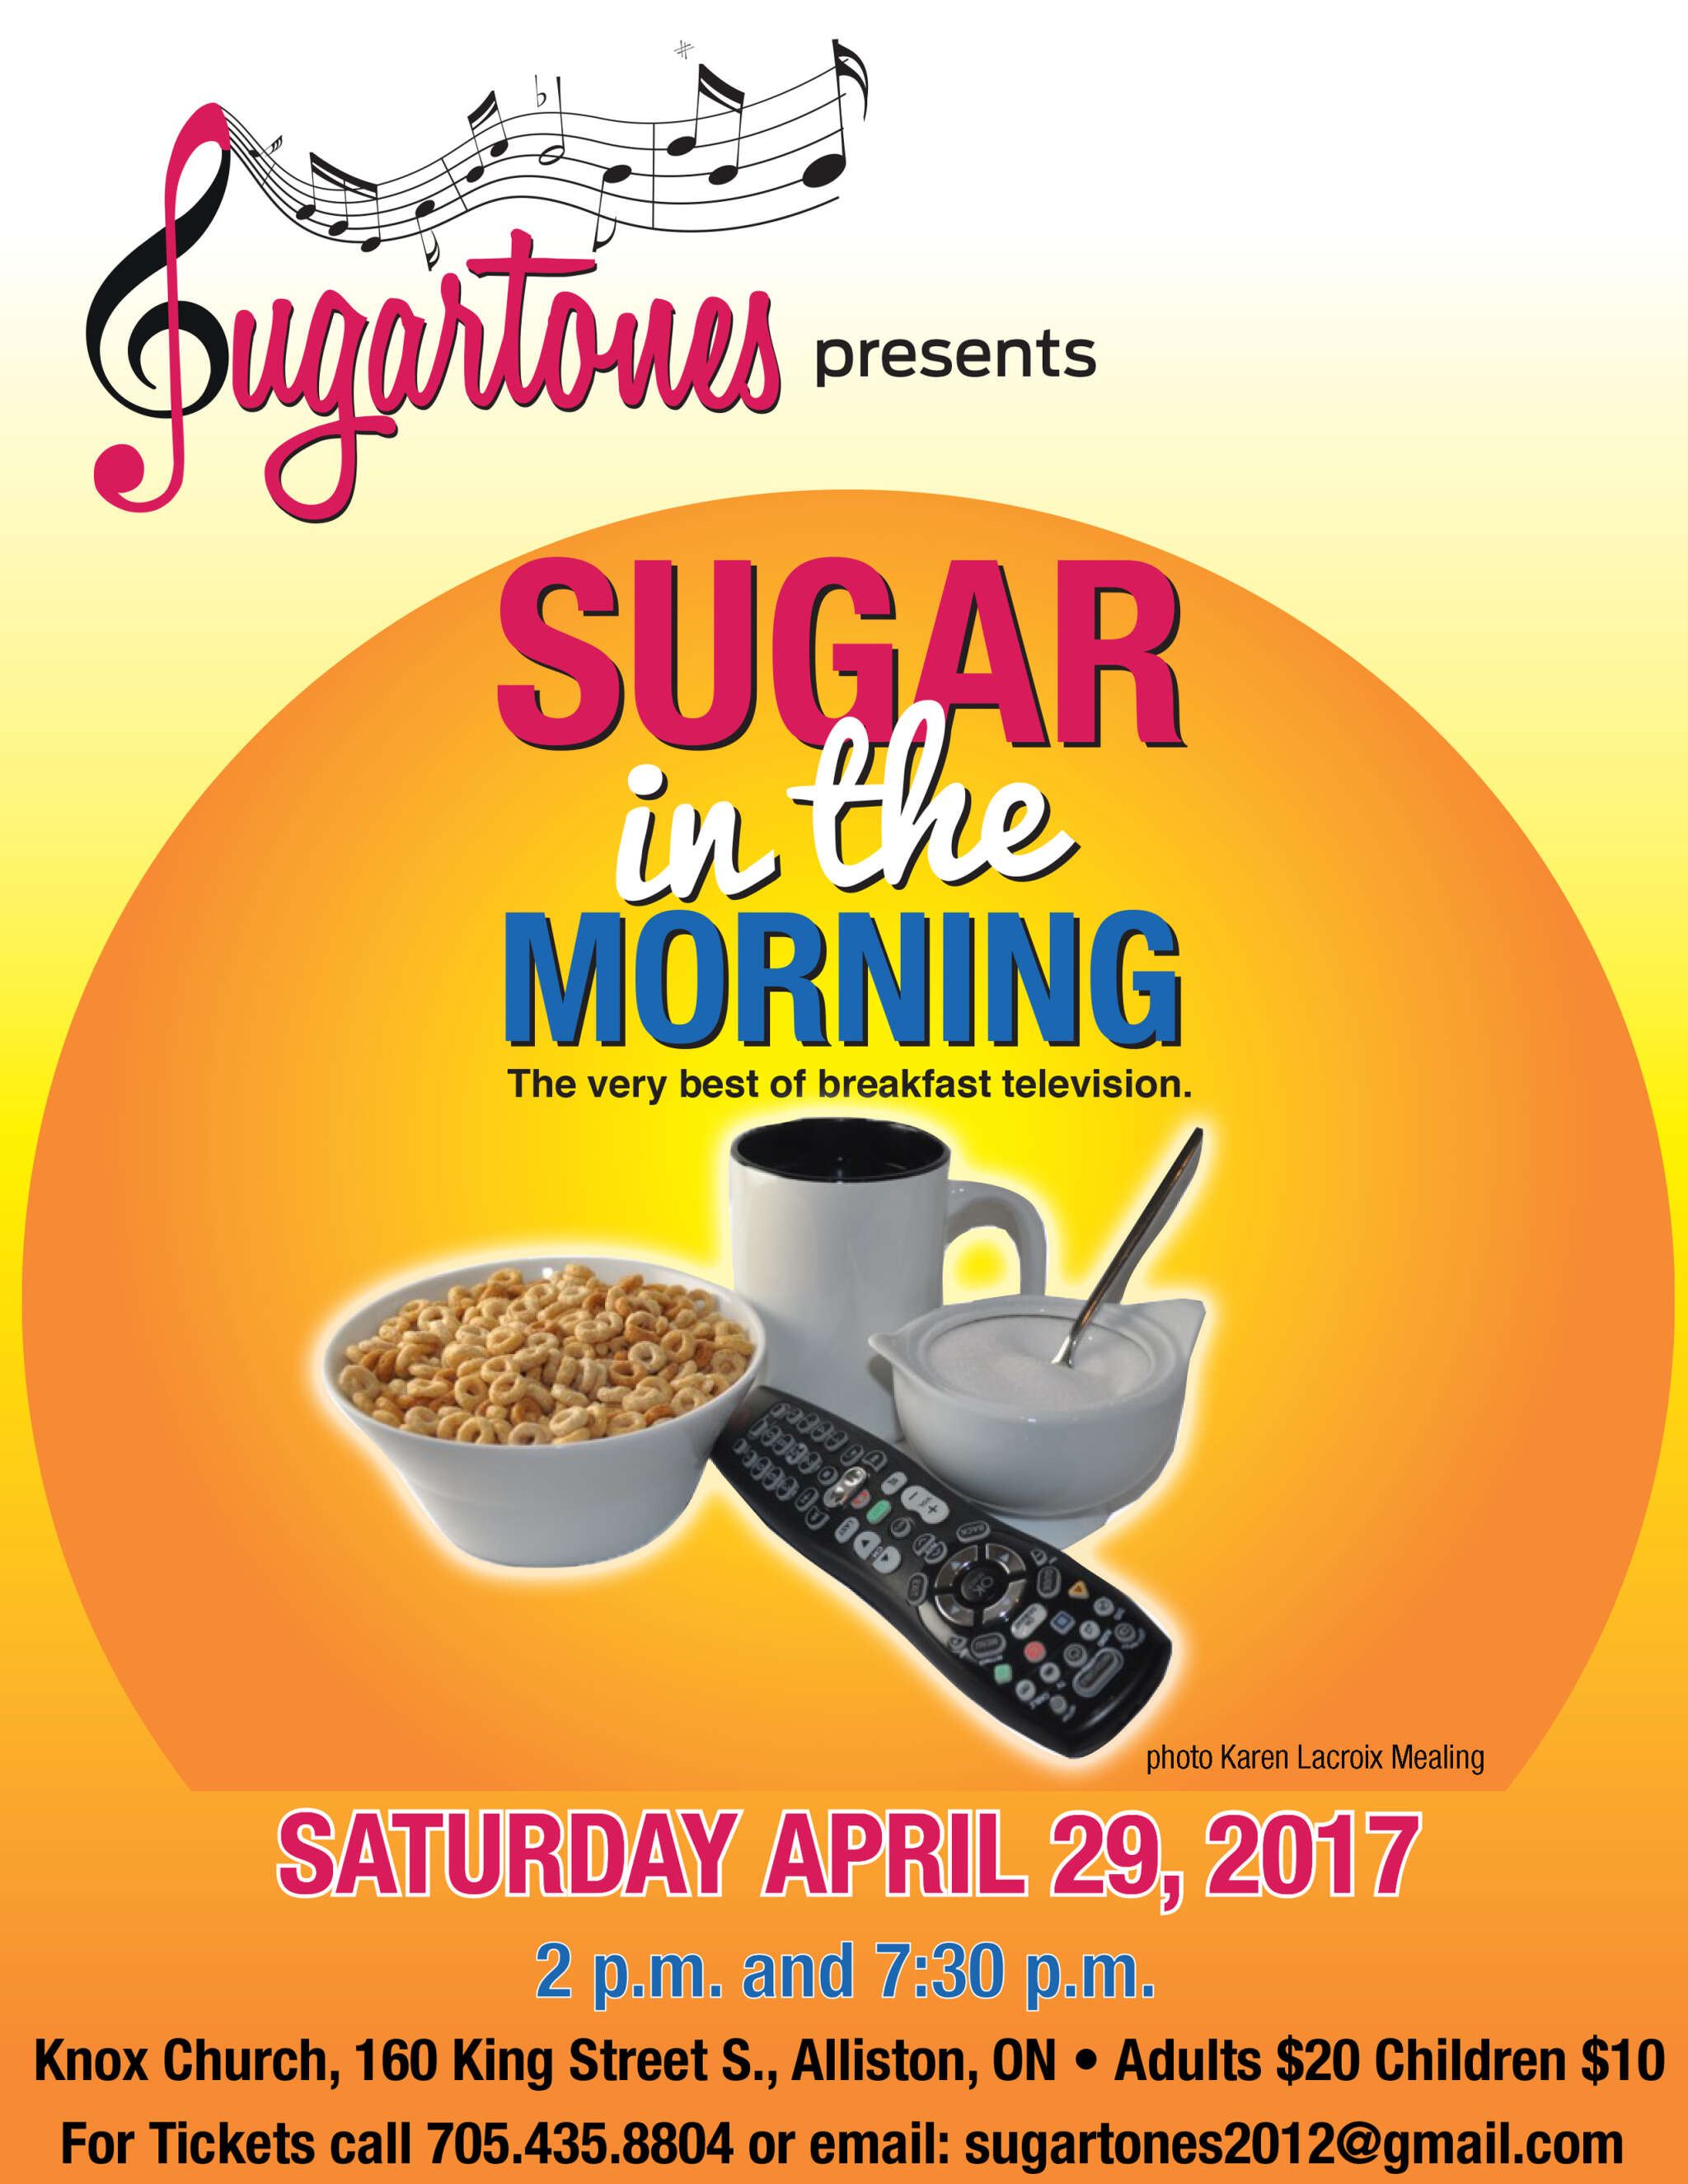 Sugartones presents SUGAR in the MORNING